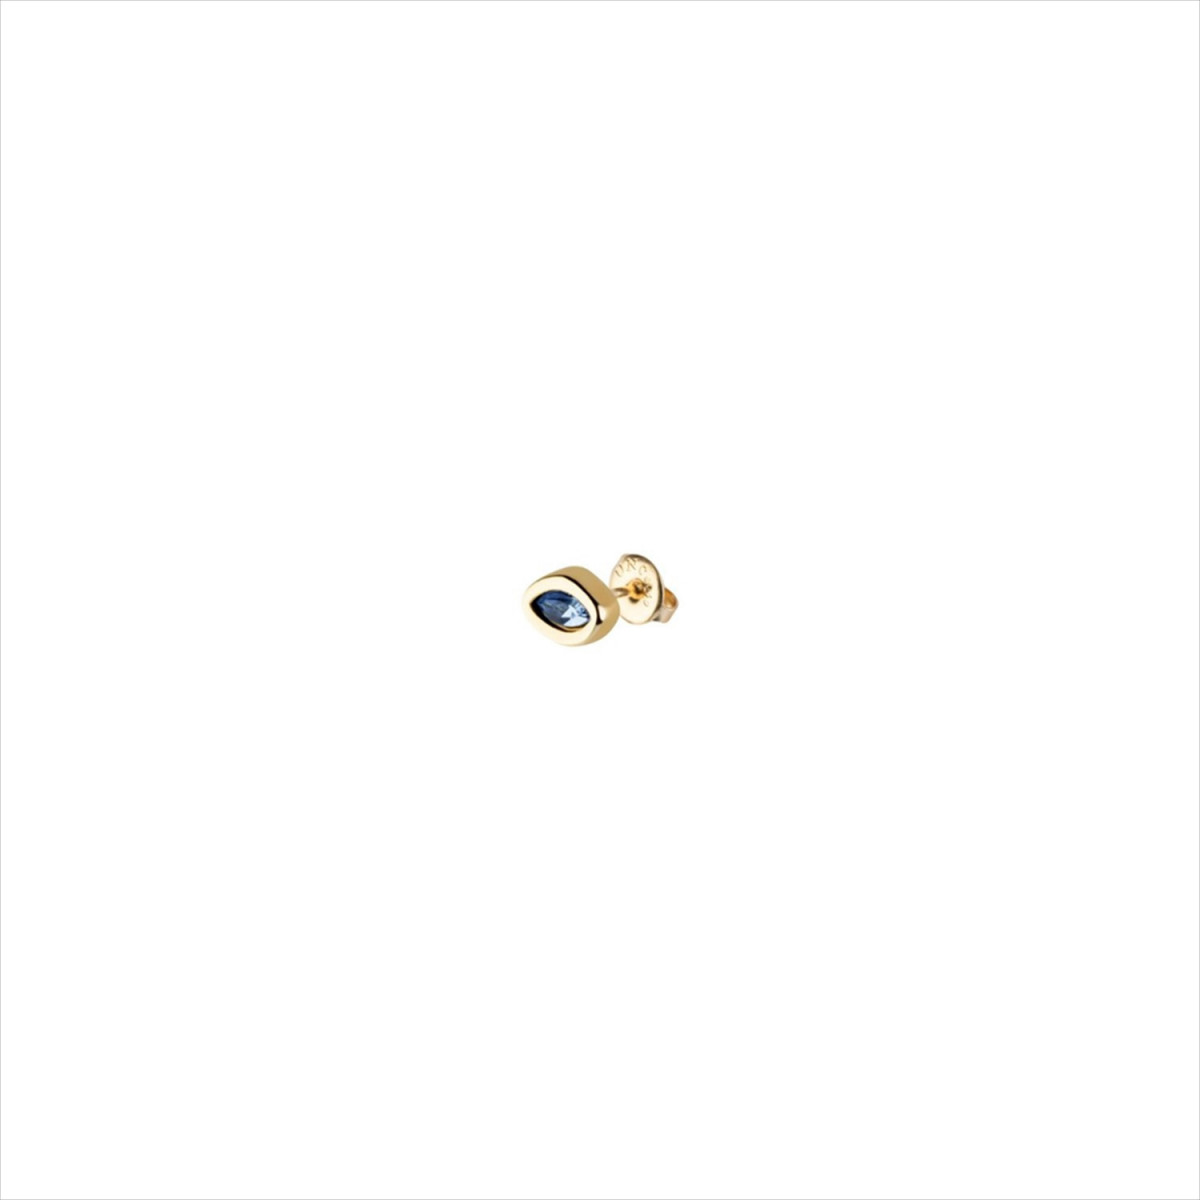 1 Pendiente Leaky stud, tipo piercing. Diseño forma de ojo y cristal azul. Metal bañado en oro. Uno de 50